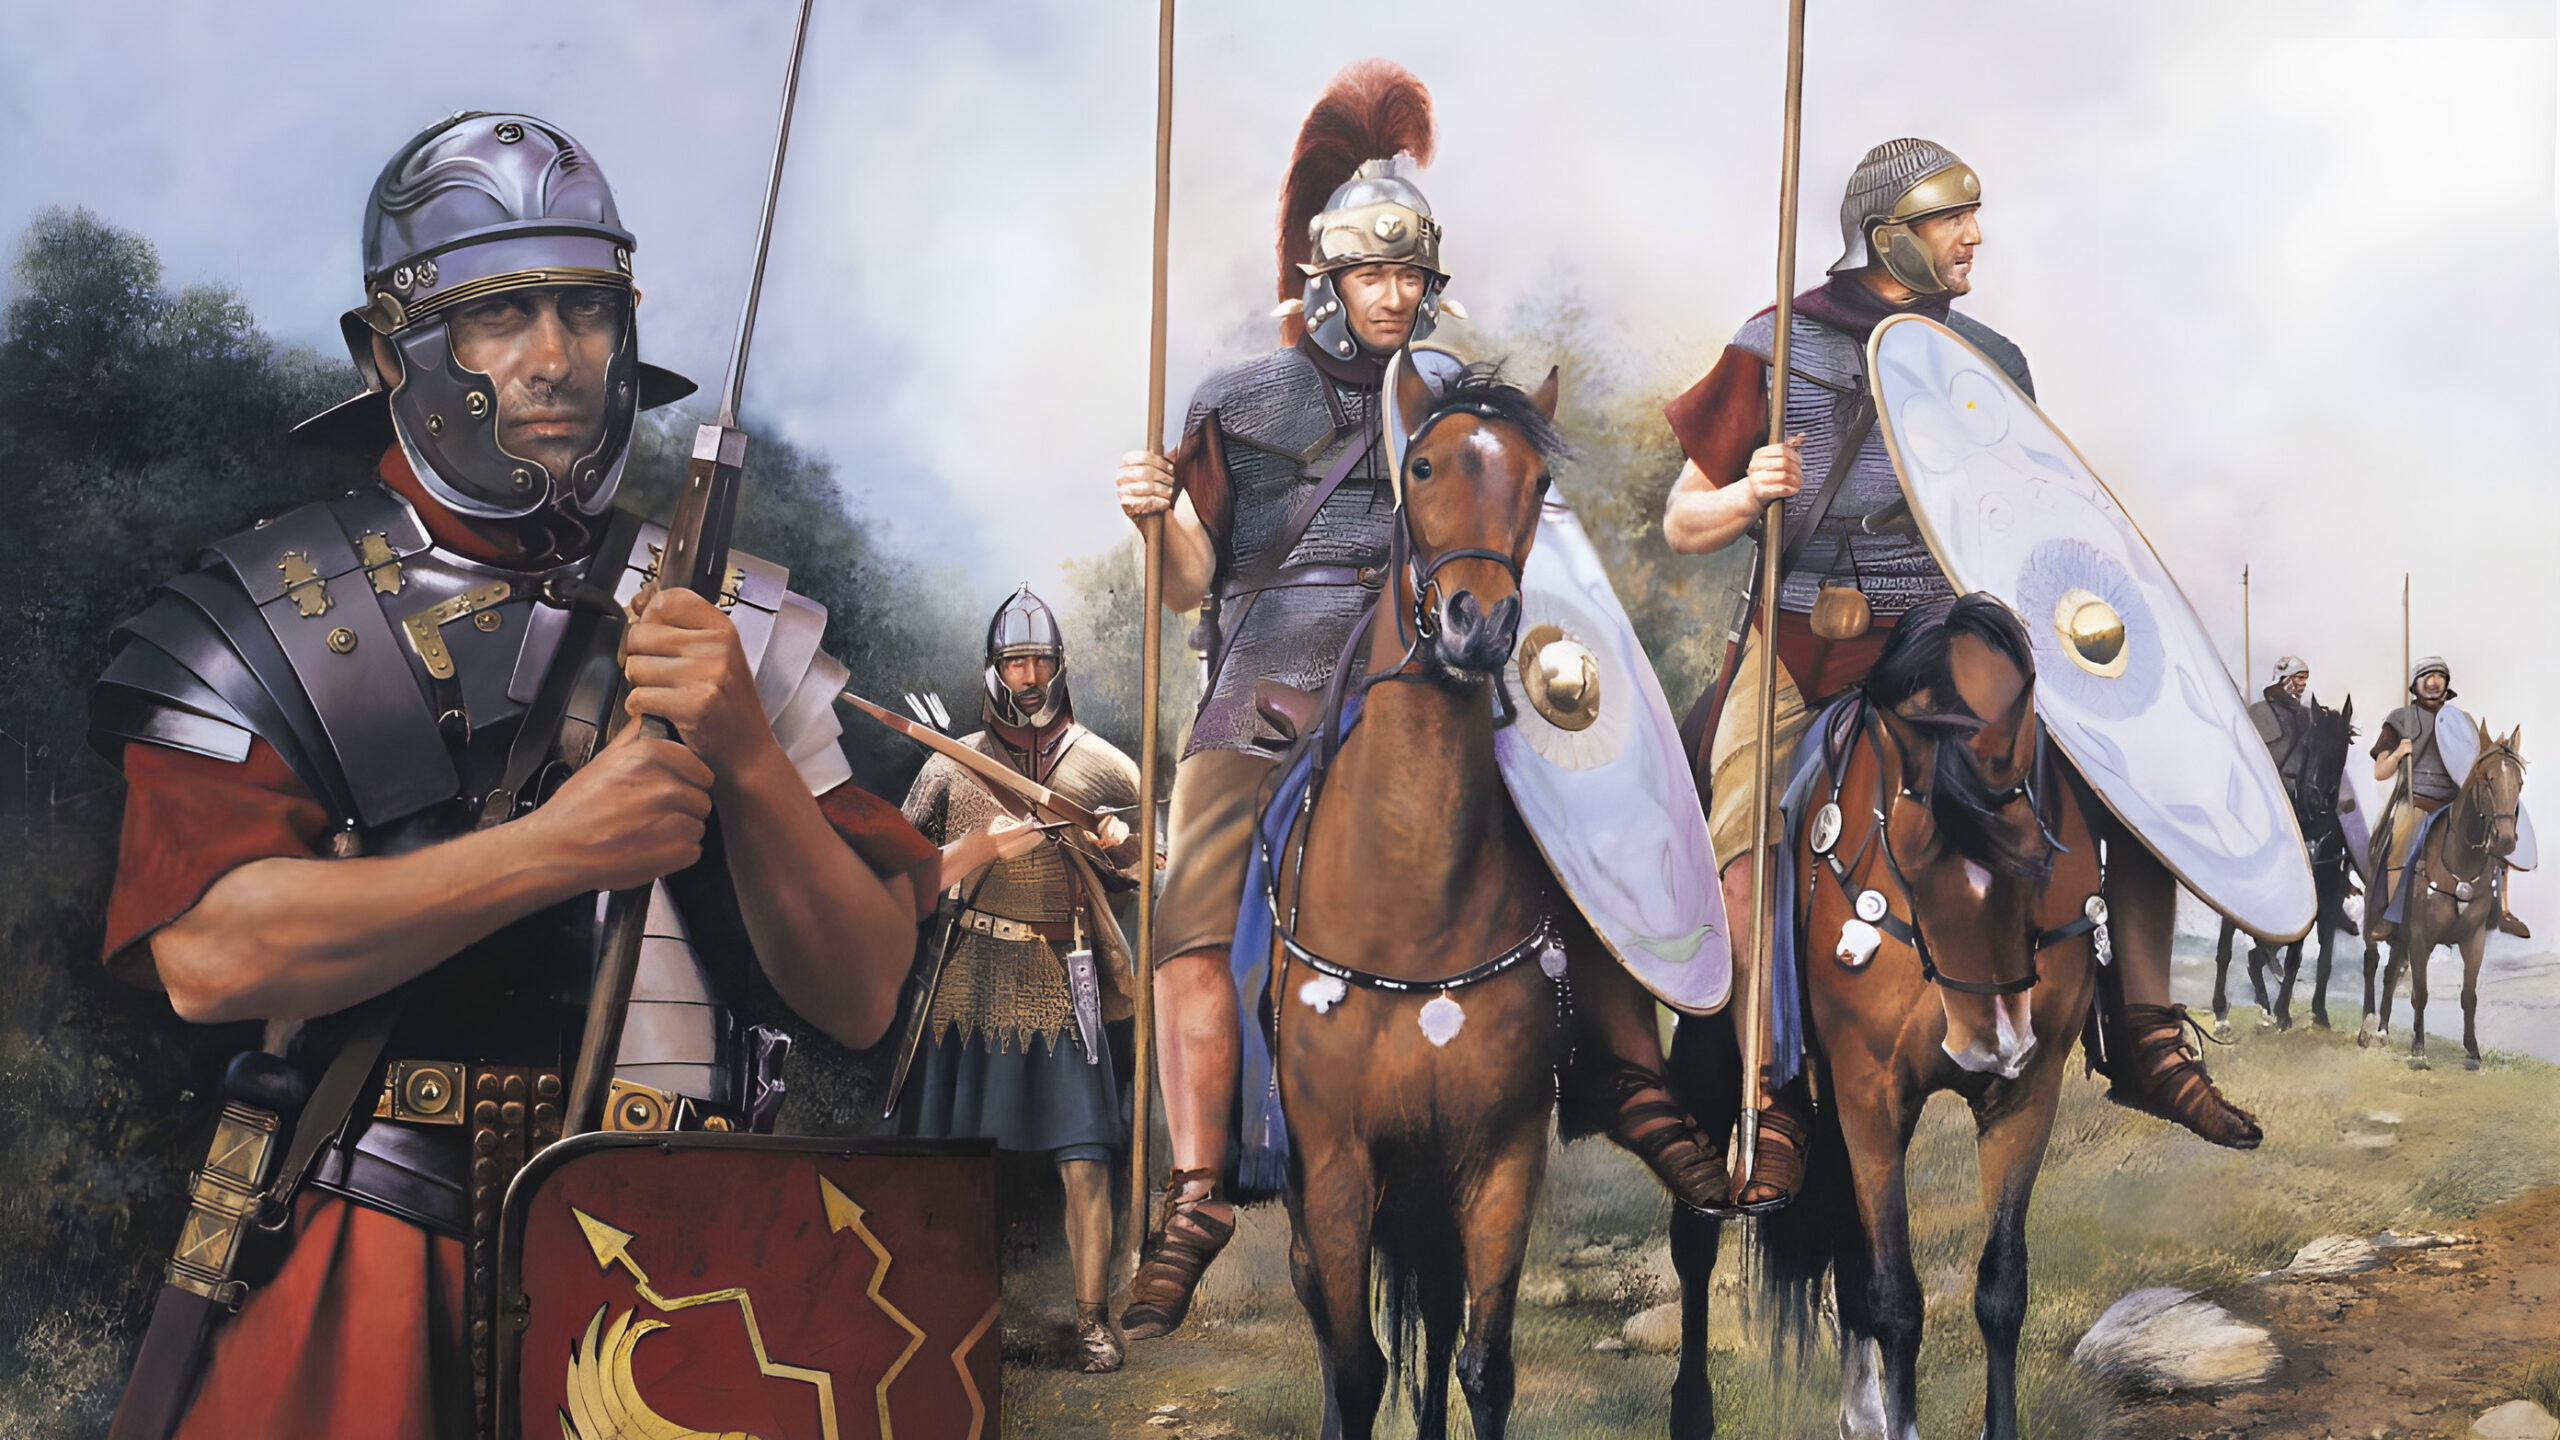 Римские алы. Конница Римского легиона. Римская армия кавалерия. Римская конница кавалерист империи.